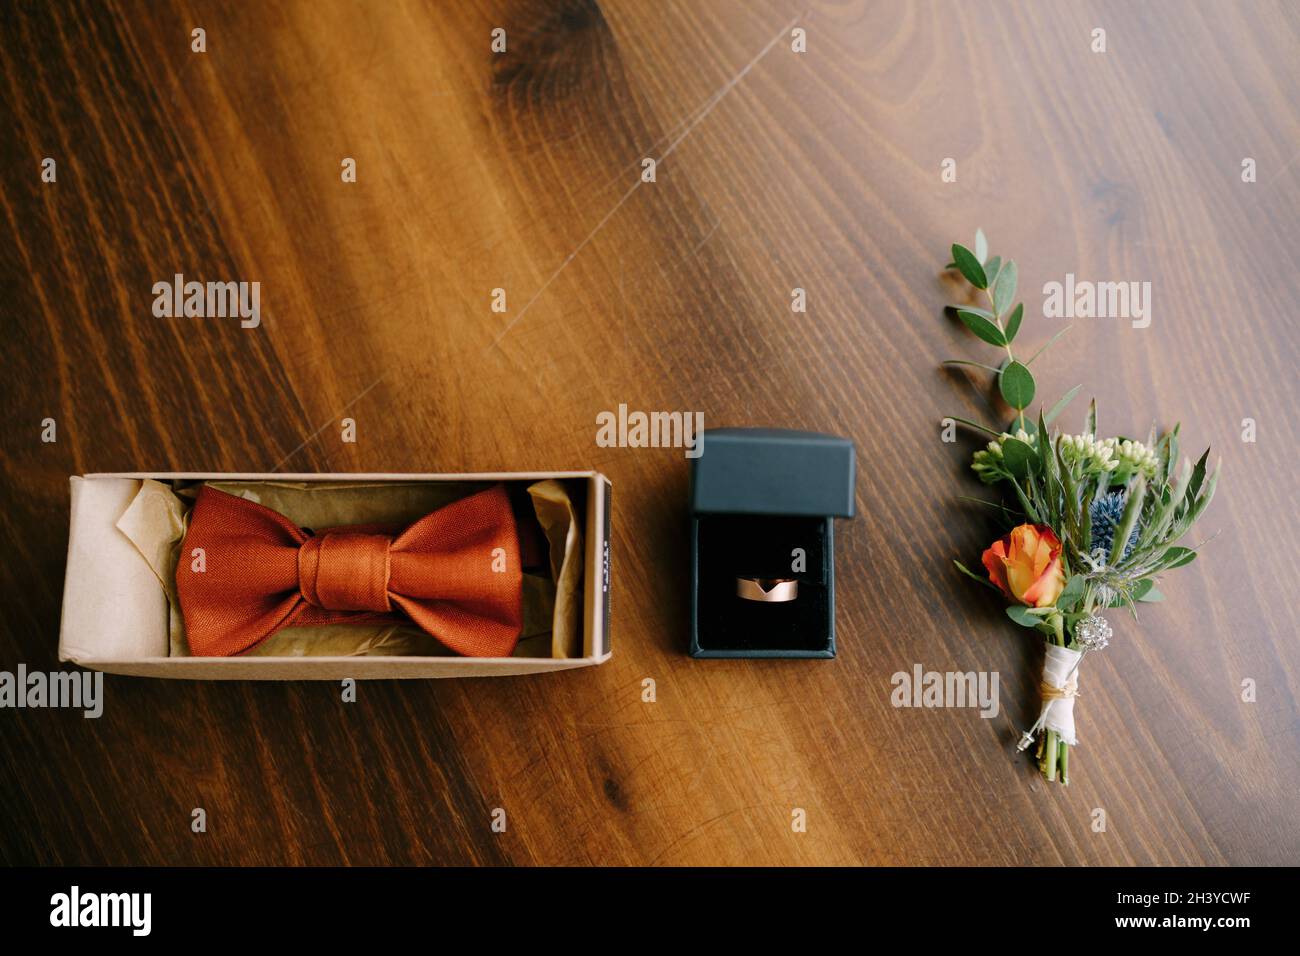 Anello di cravatta immagini e fotografie stock ad alta risoluzione - Alamy